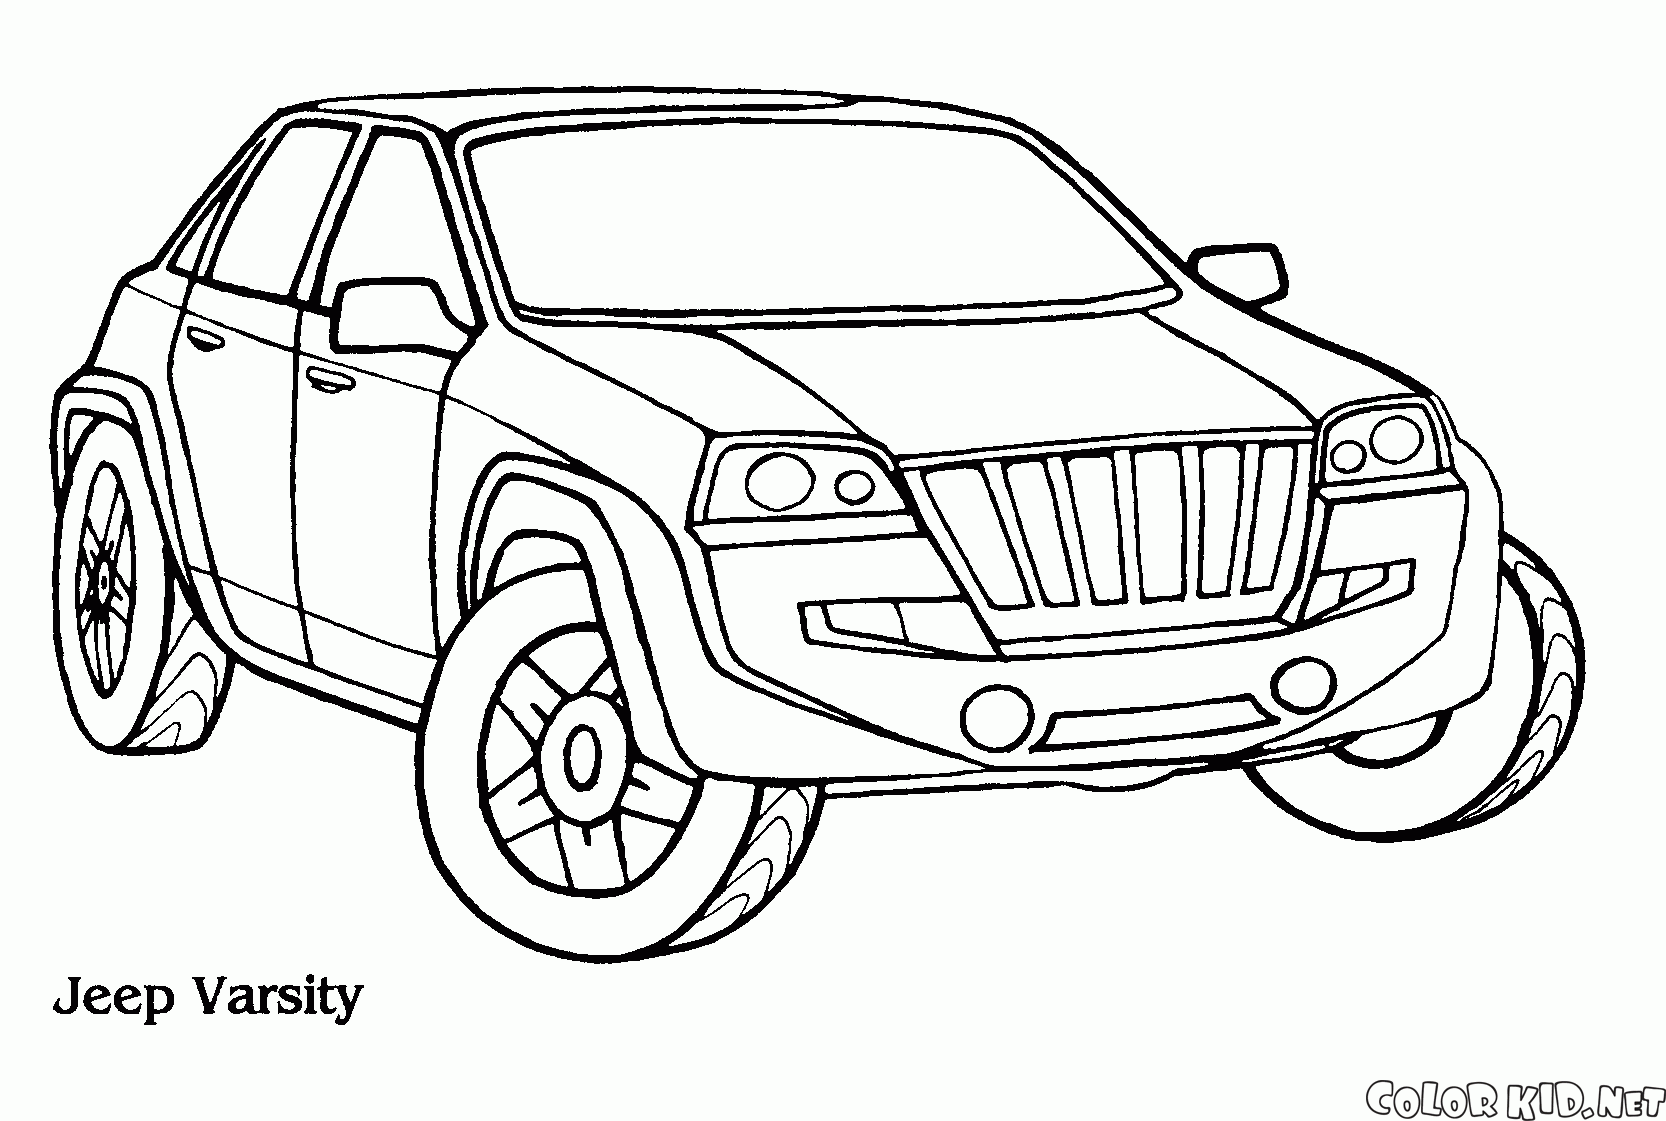 Jeep Varsati